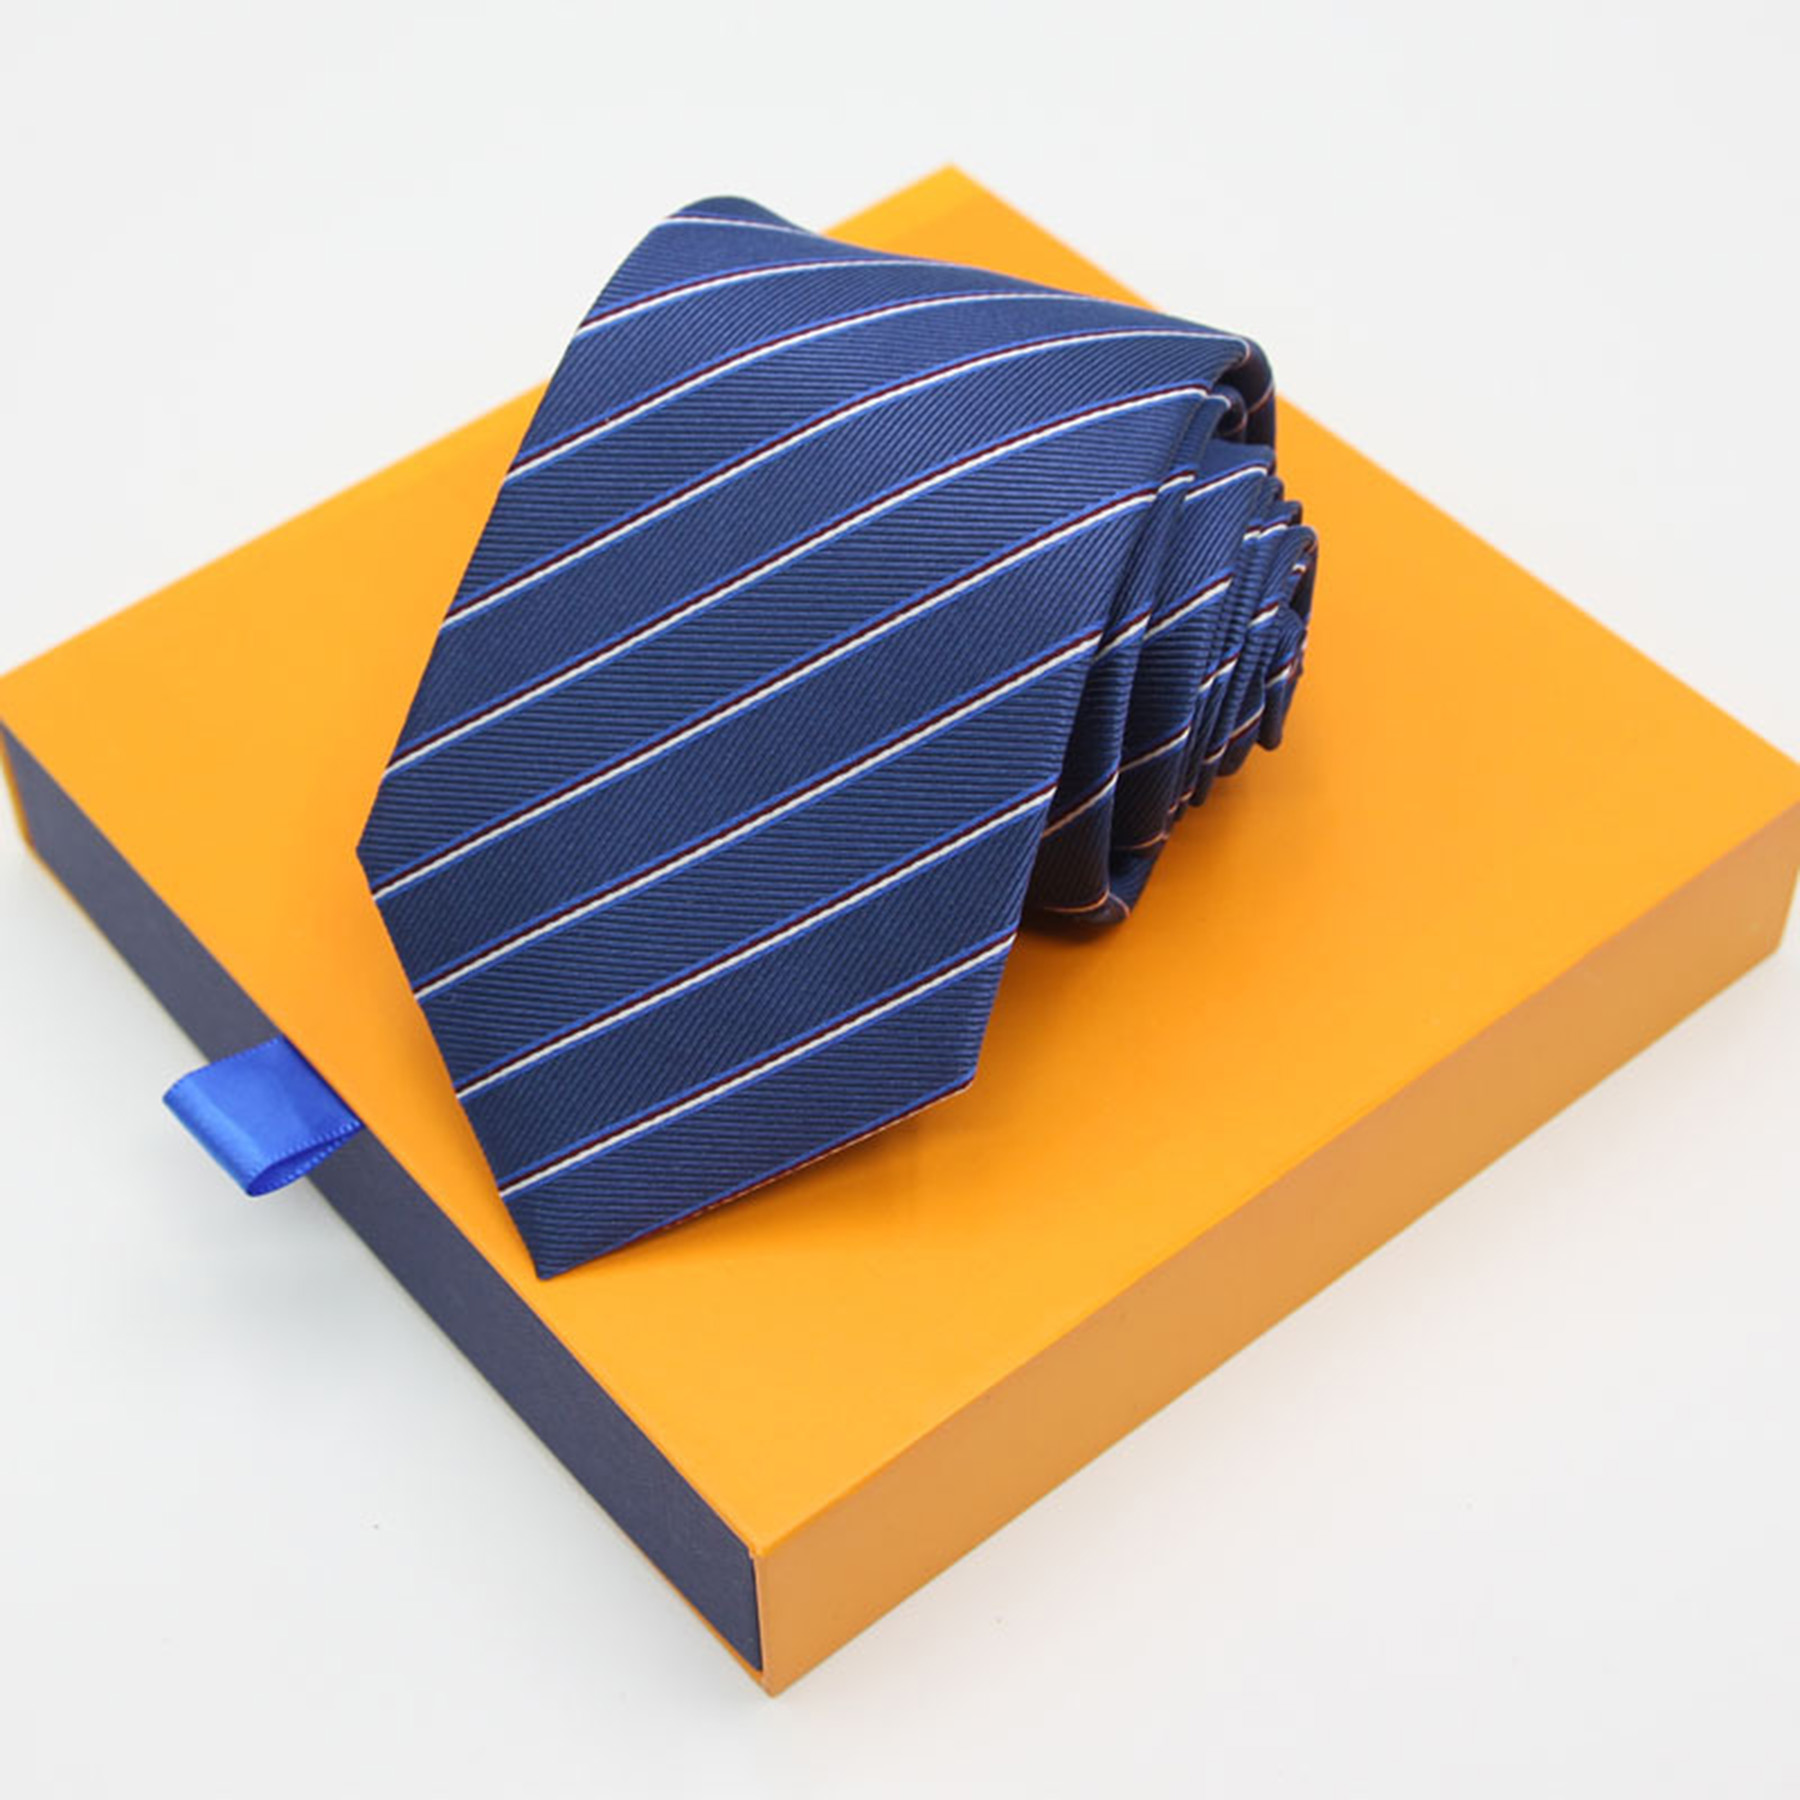 Plaid Classic Men's Necktie 